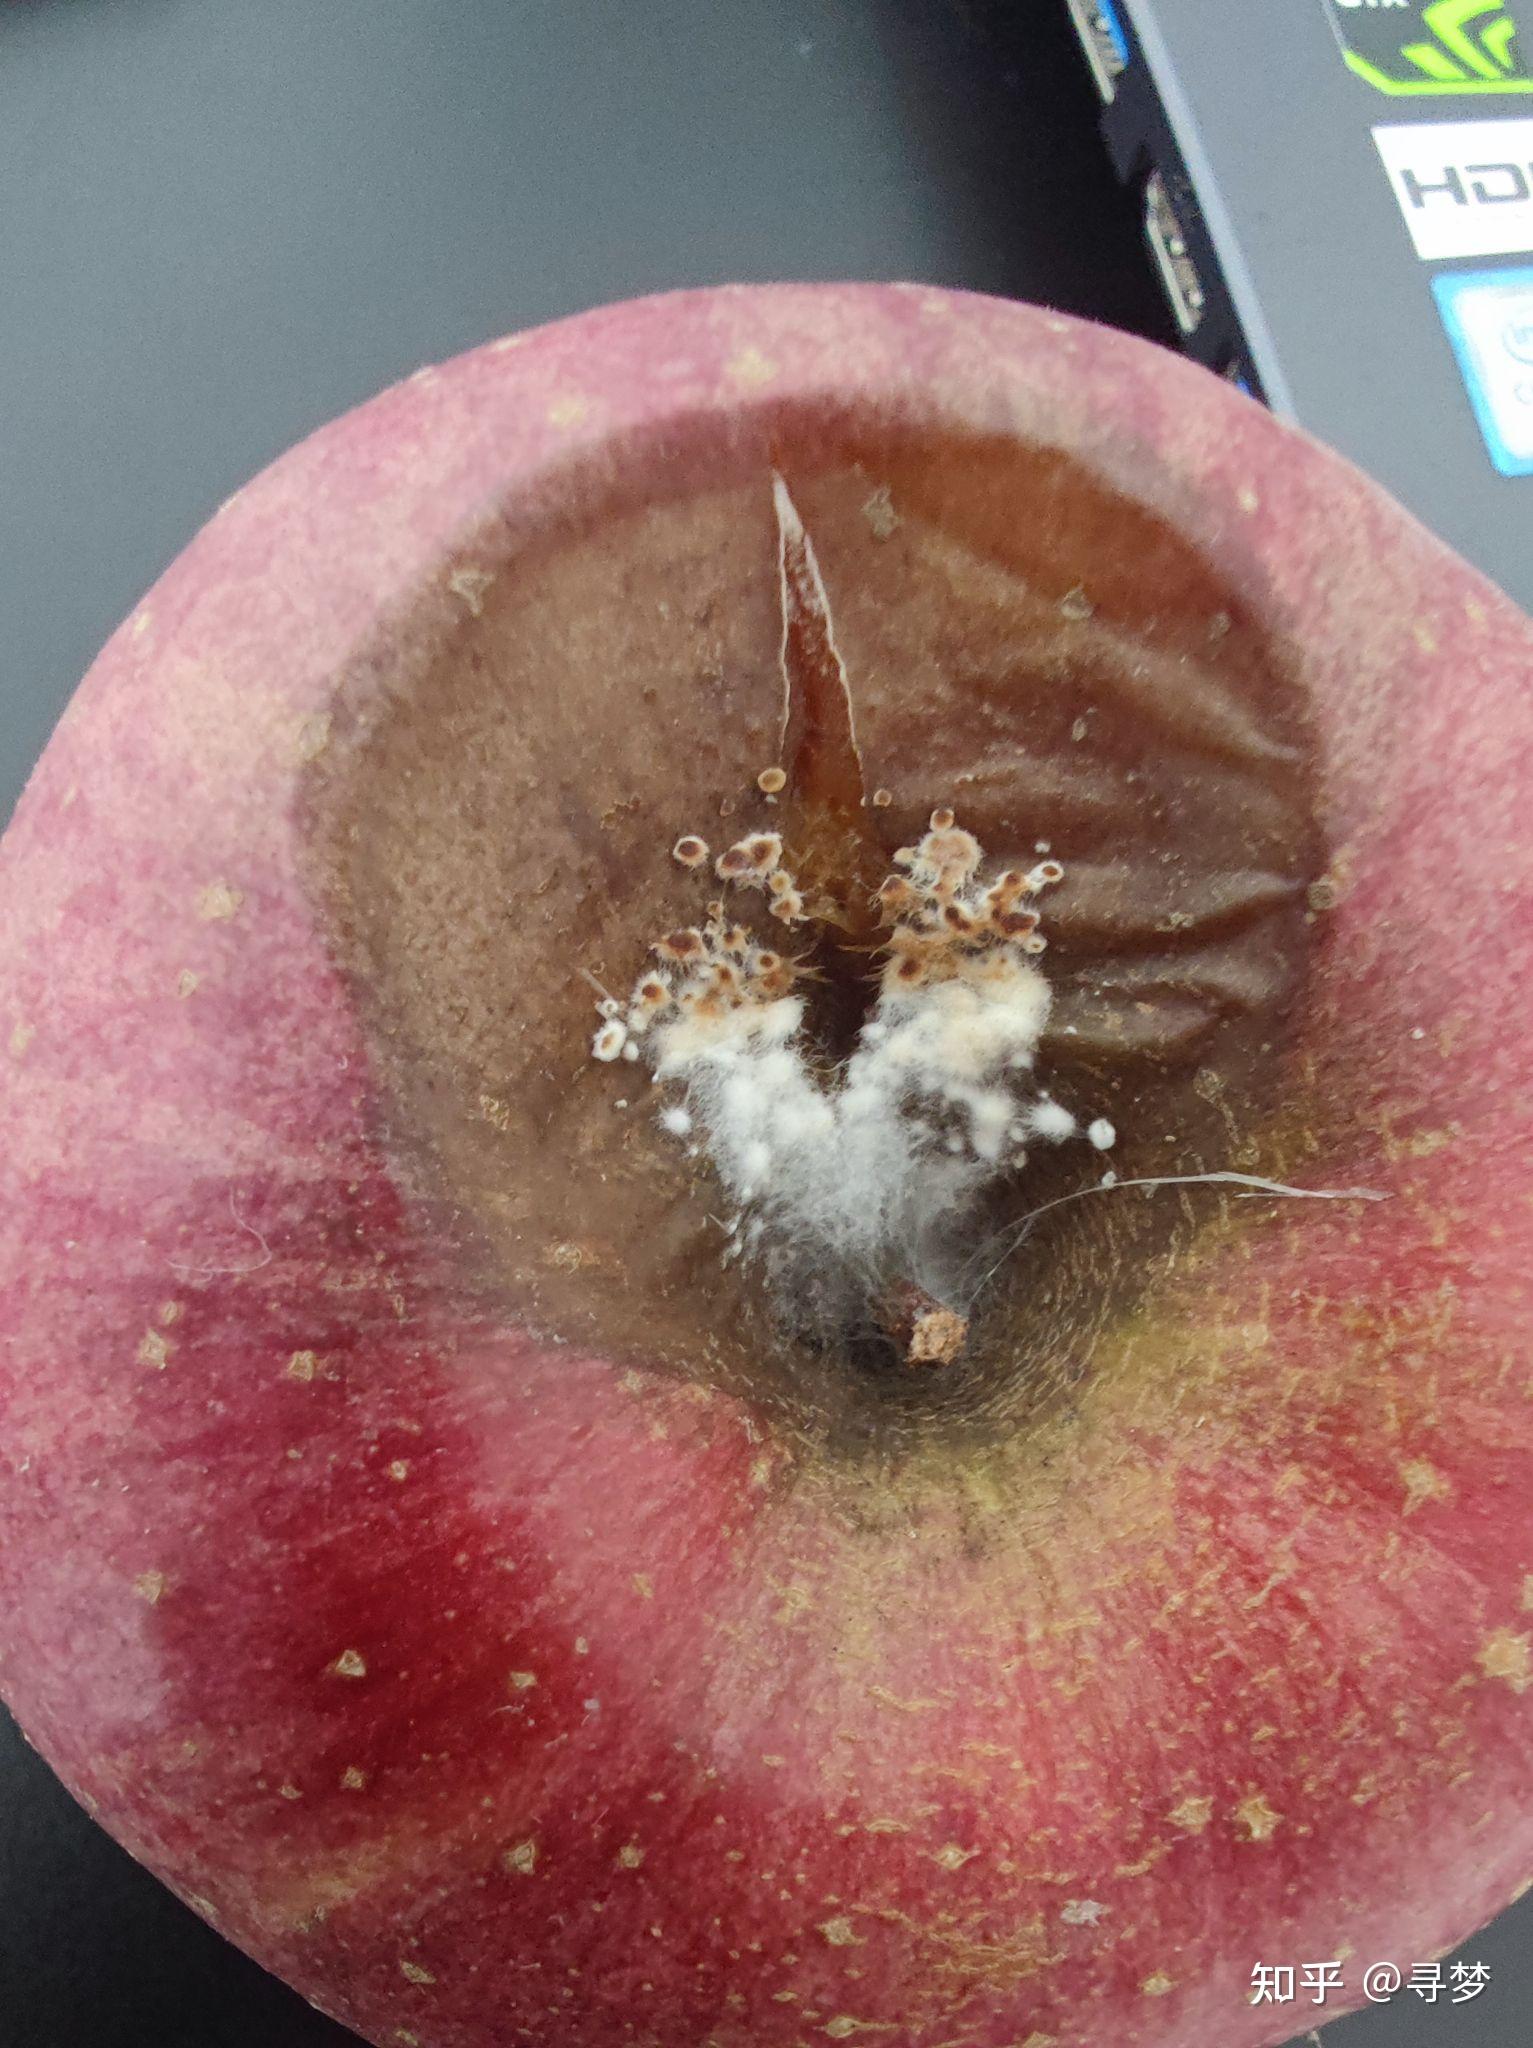 富士苹果在储藏过程中出现果窝腐烂是什么原因